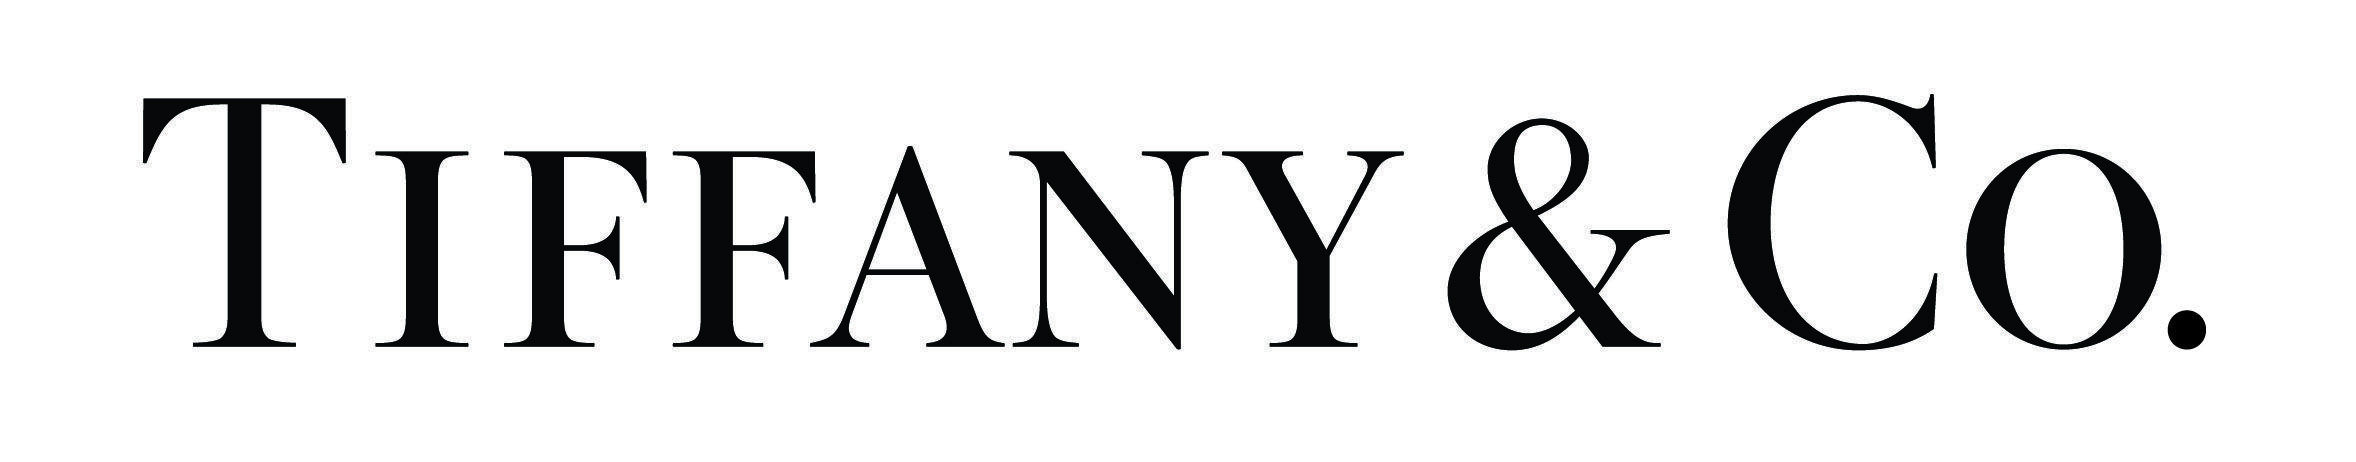 Tiffany and Co Logo - Tiffany & Co. - Galleria Dallas